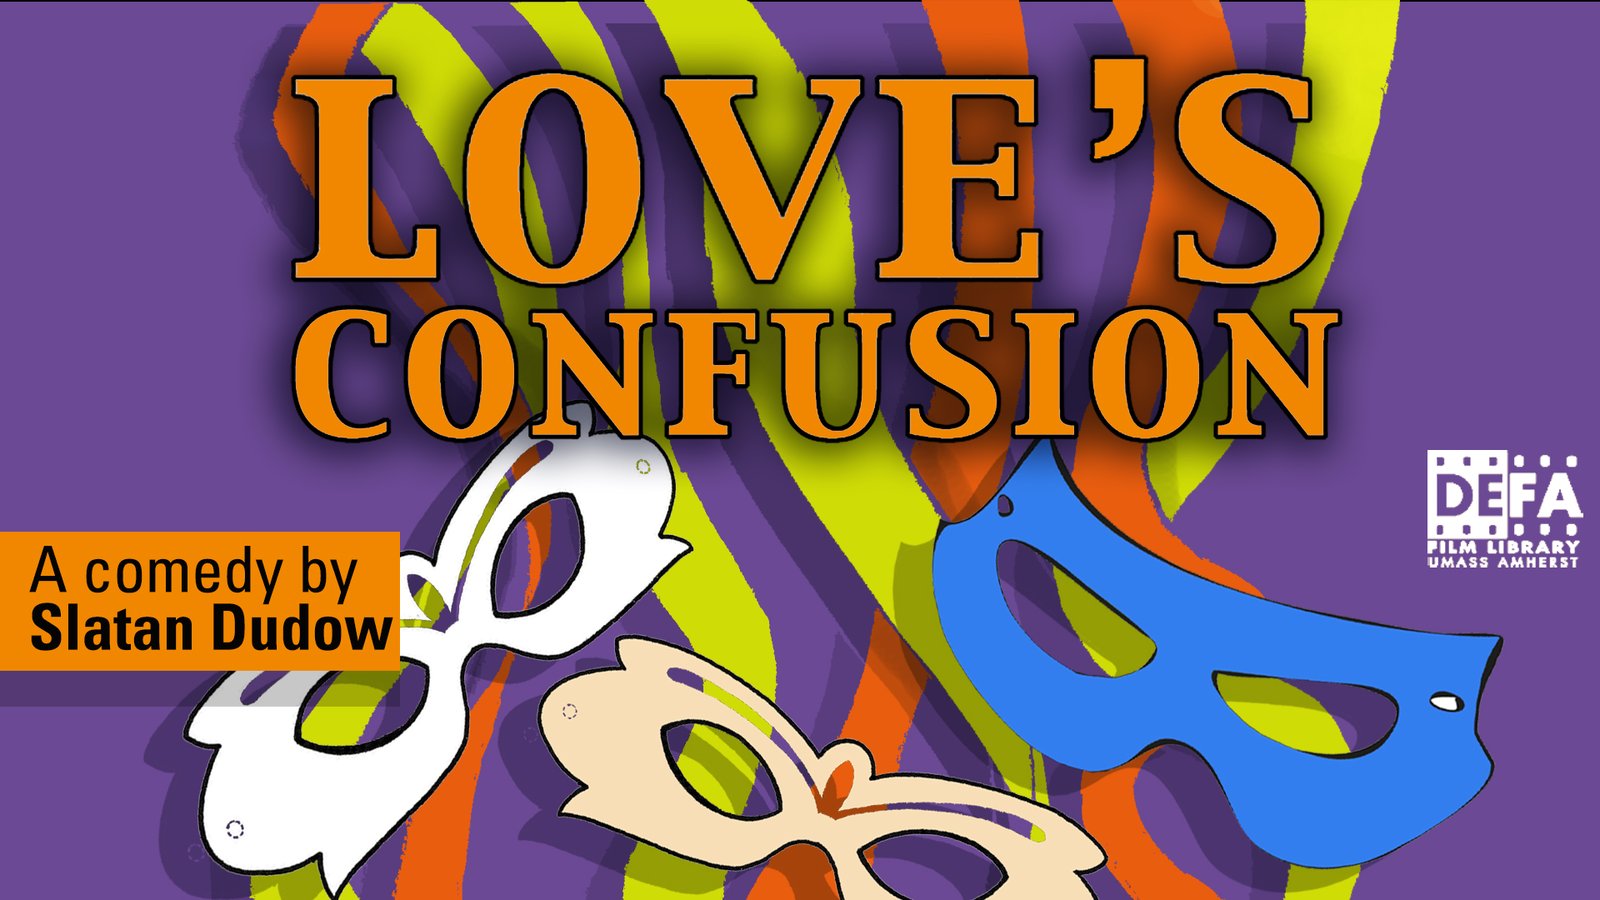 Love's Confusion - Verwirrung der Liebe